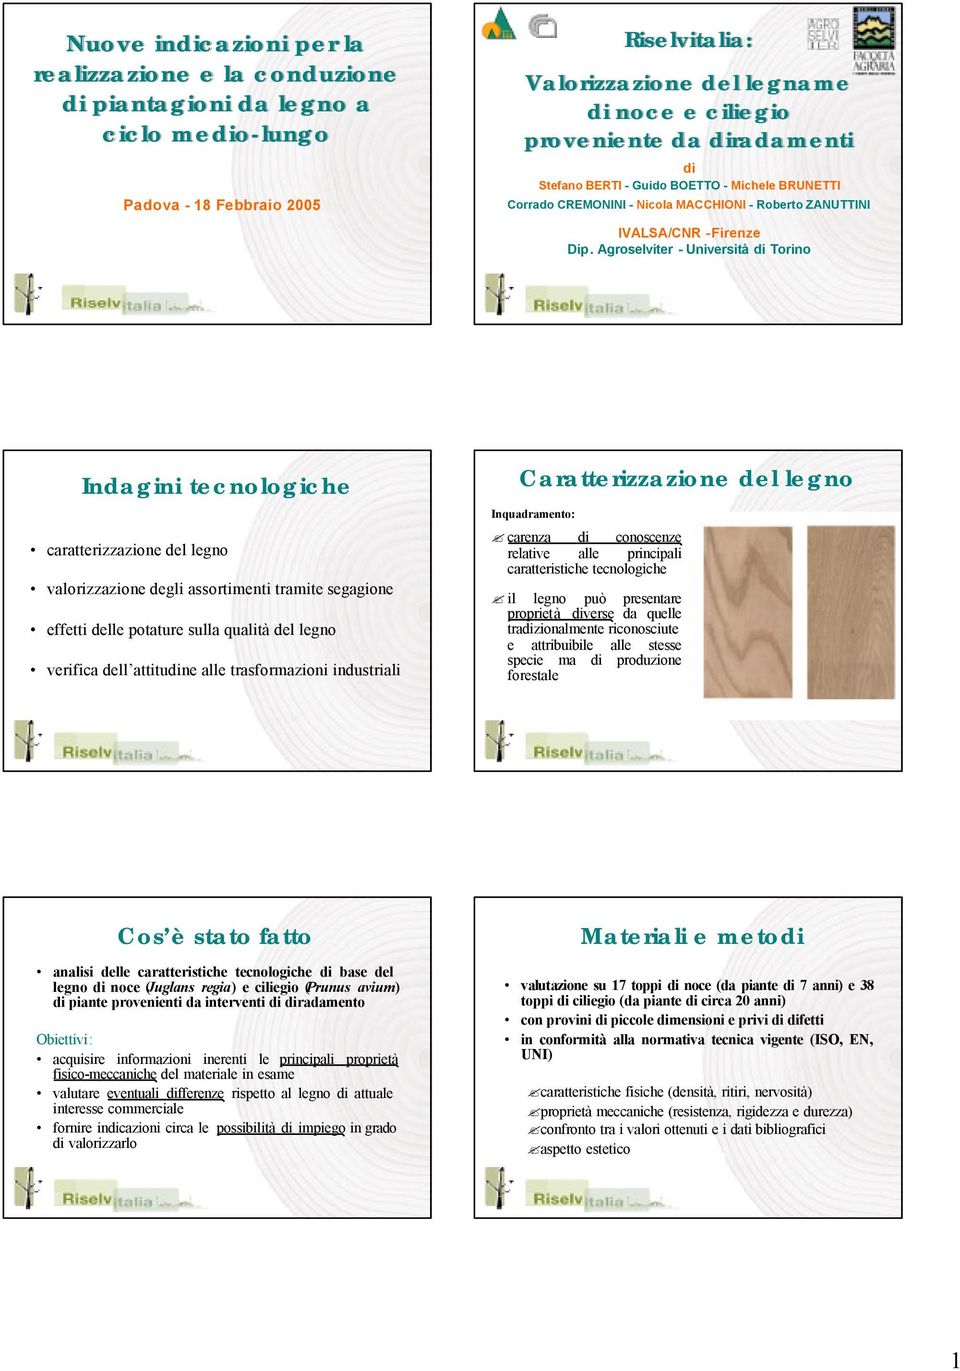 Agroselviter -Università di Torino Indagini tecnologiche caratterizzazione del legno valorizzazione degli assortimenti tramite segagione effetti delle potature sulla qualità del legno verifica dell